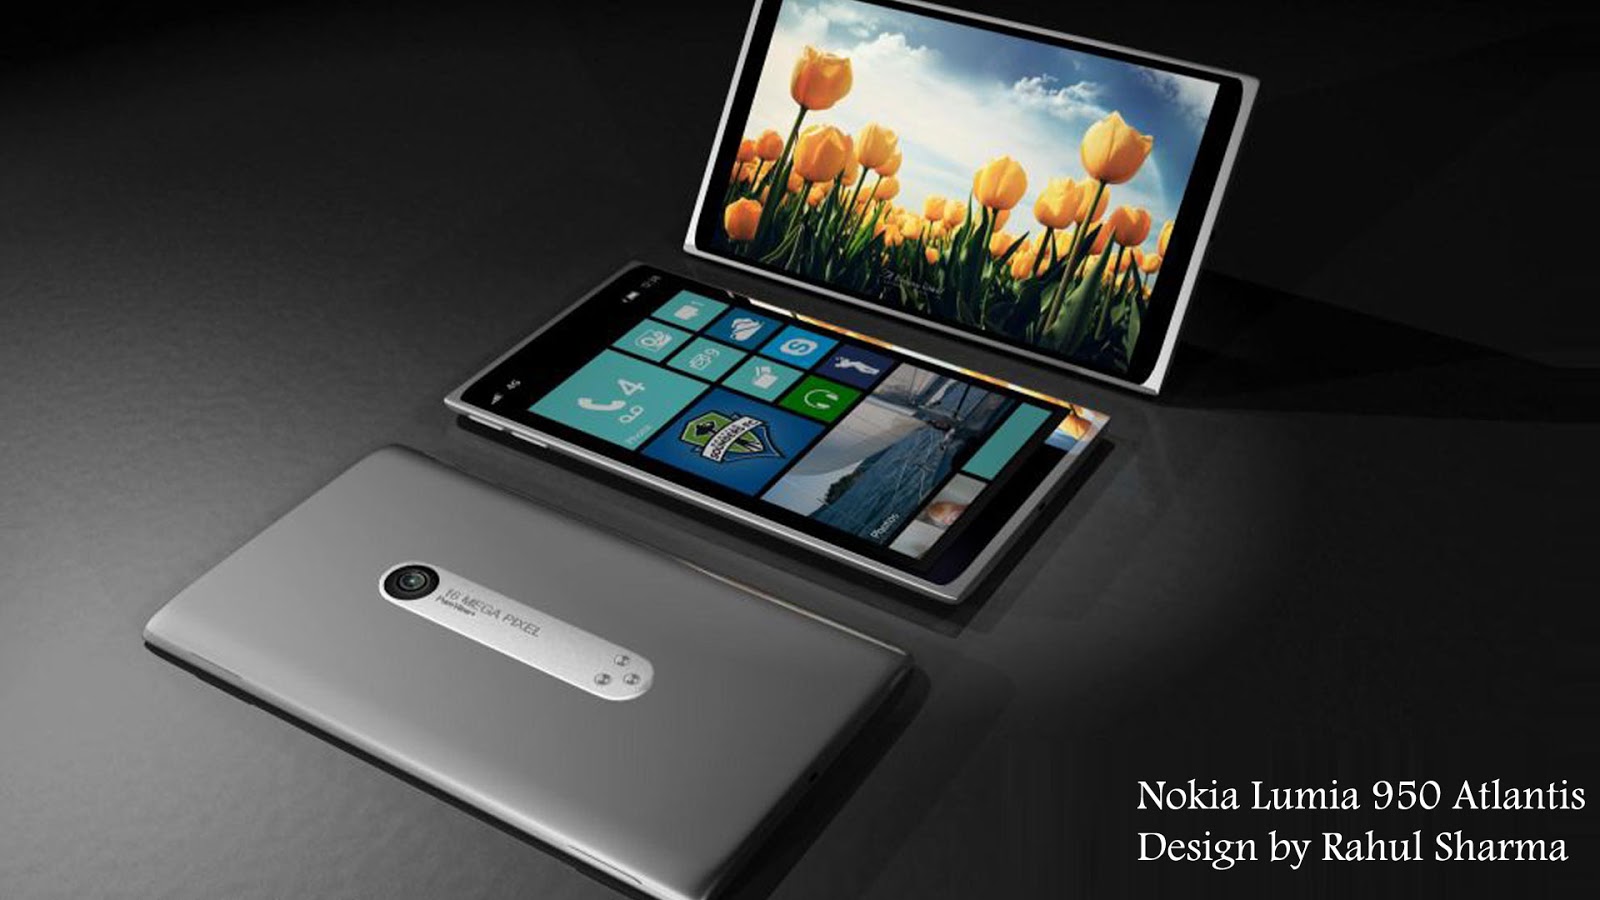 Nokia Lumia Mobile Phone Wallpaper Prime